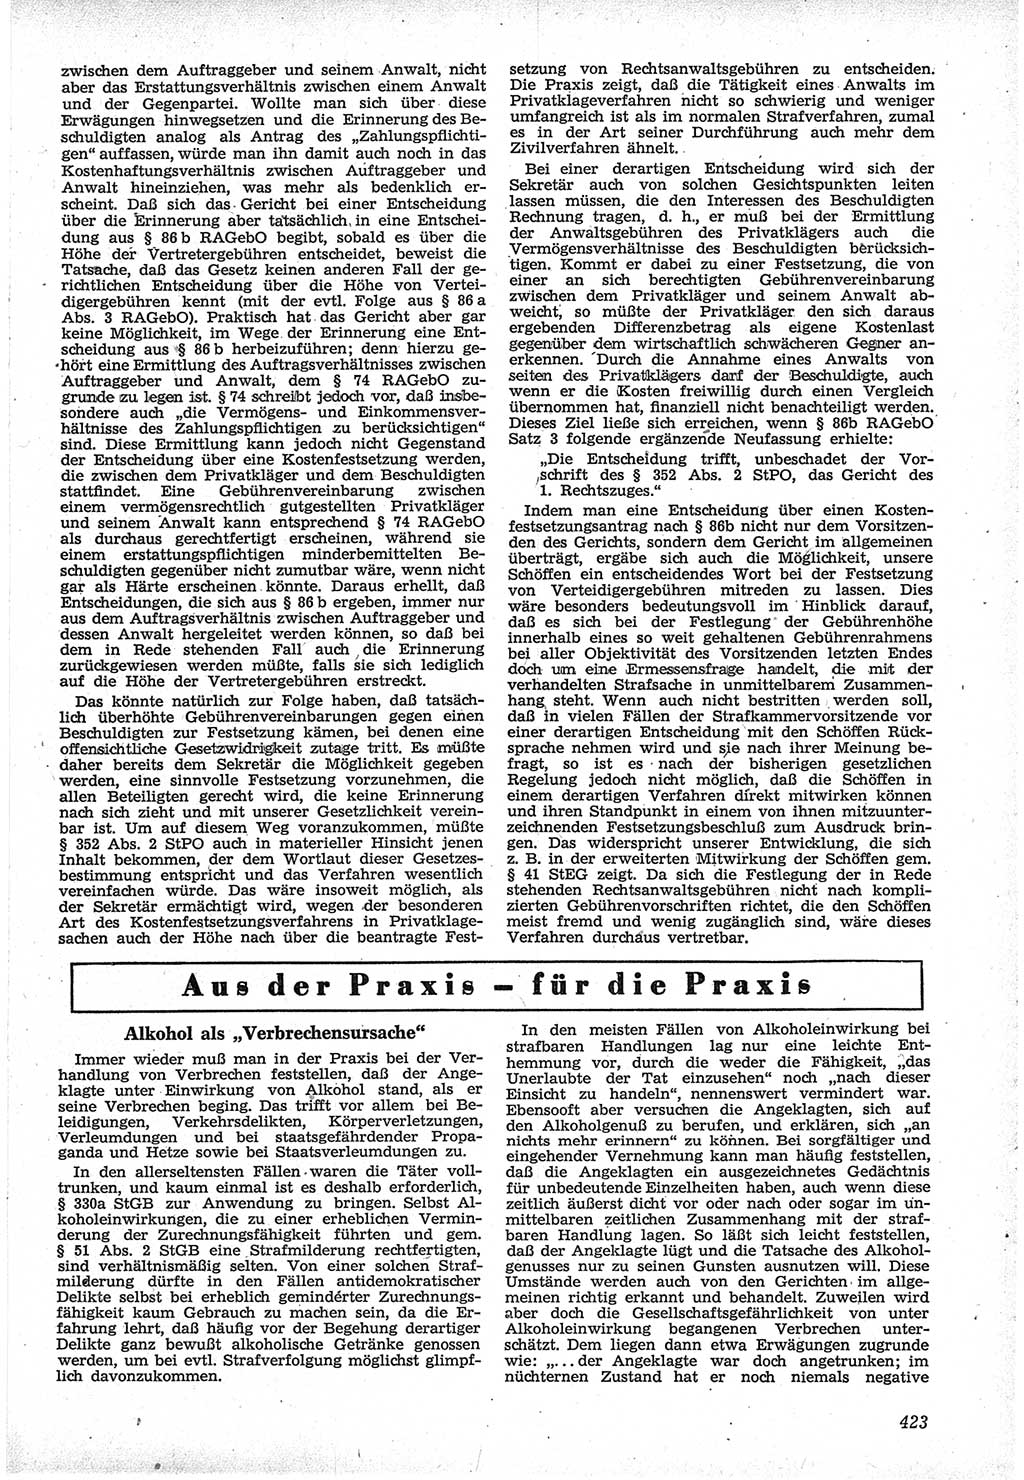 Neue Justiz (NJ), Zeitschrift für Recht und Rechtswissenschaft [Deutsche Demokratische Republik (DDR)], 12. Jahrgang 1958, Seite 423 (NJ DDR 1958, S. 423)